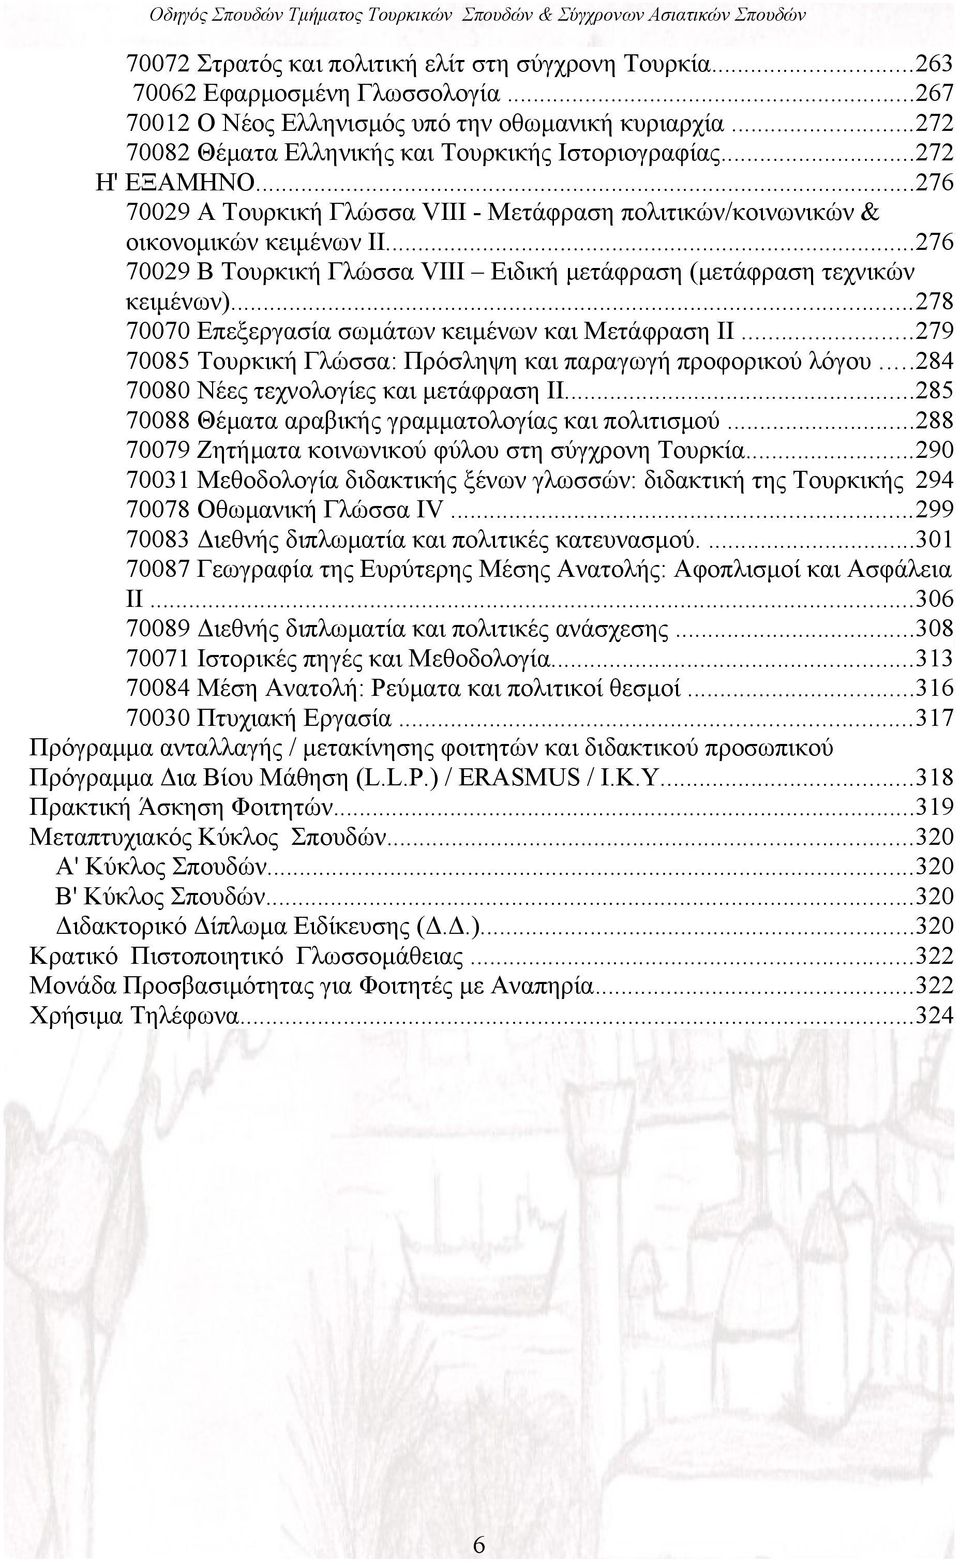 ..276 70029 Β Τουρκική Γλώσσα VΙΙΙ Ειδική μετάφραση (μετάφραση τεχνικών κειμένων)...278 70070 Επεξεργασία σωμάτων κειμένων και Μετάφραση ΙΙ.